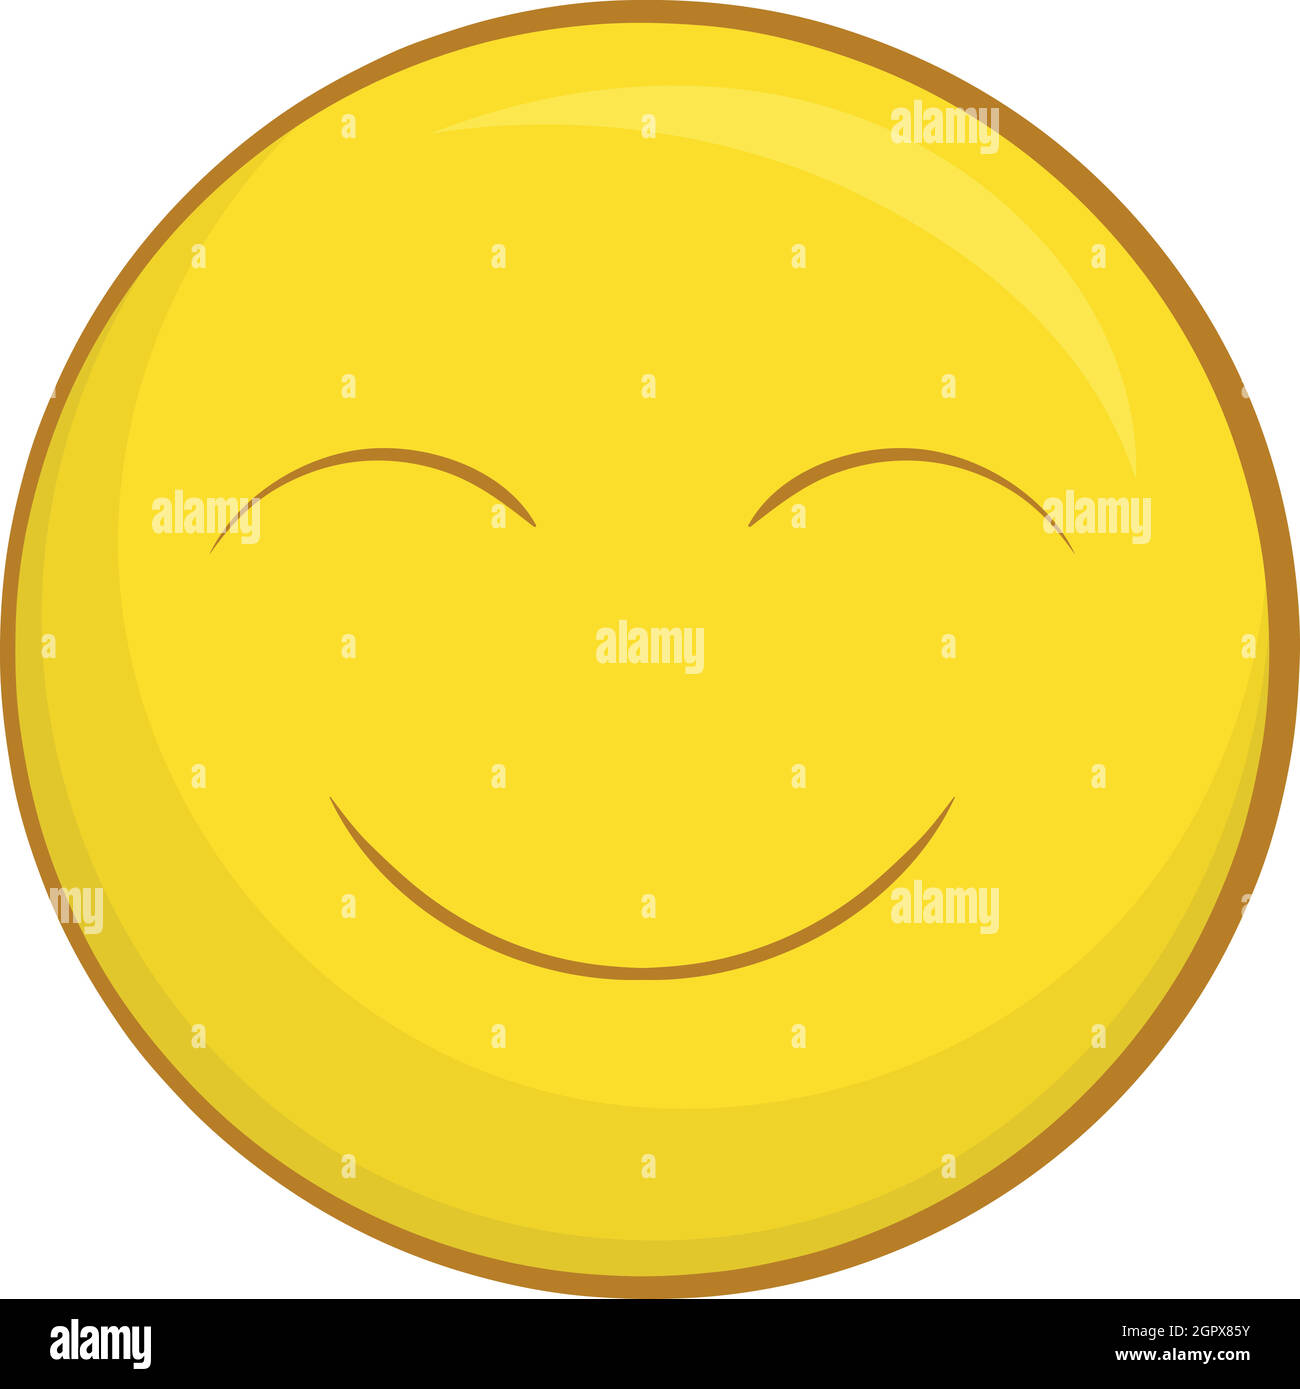 Smiley face icon, cartoon style Stock Vector